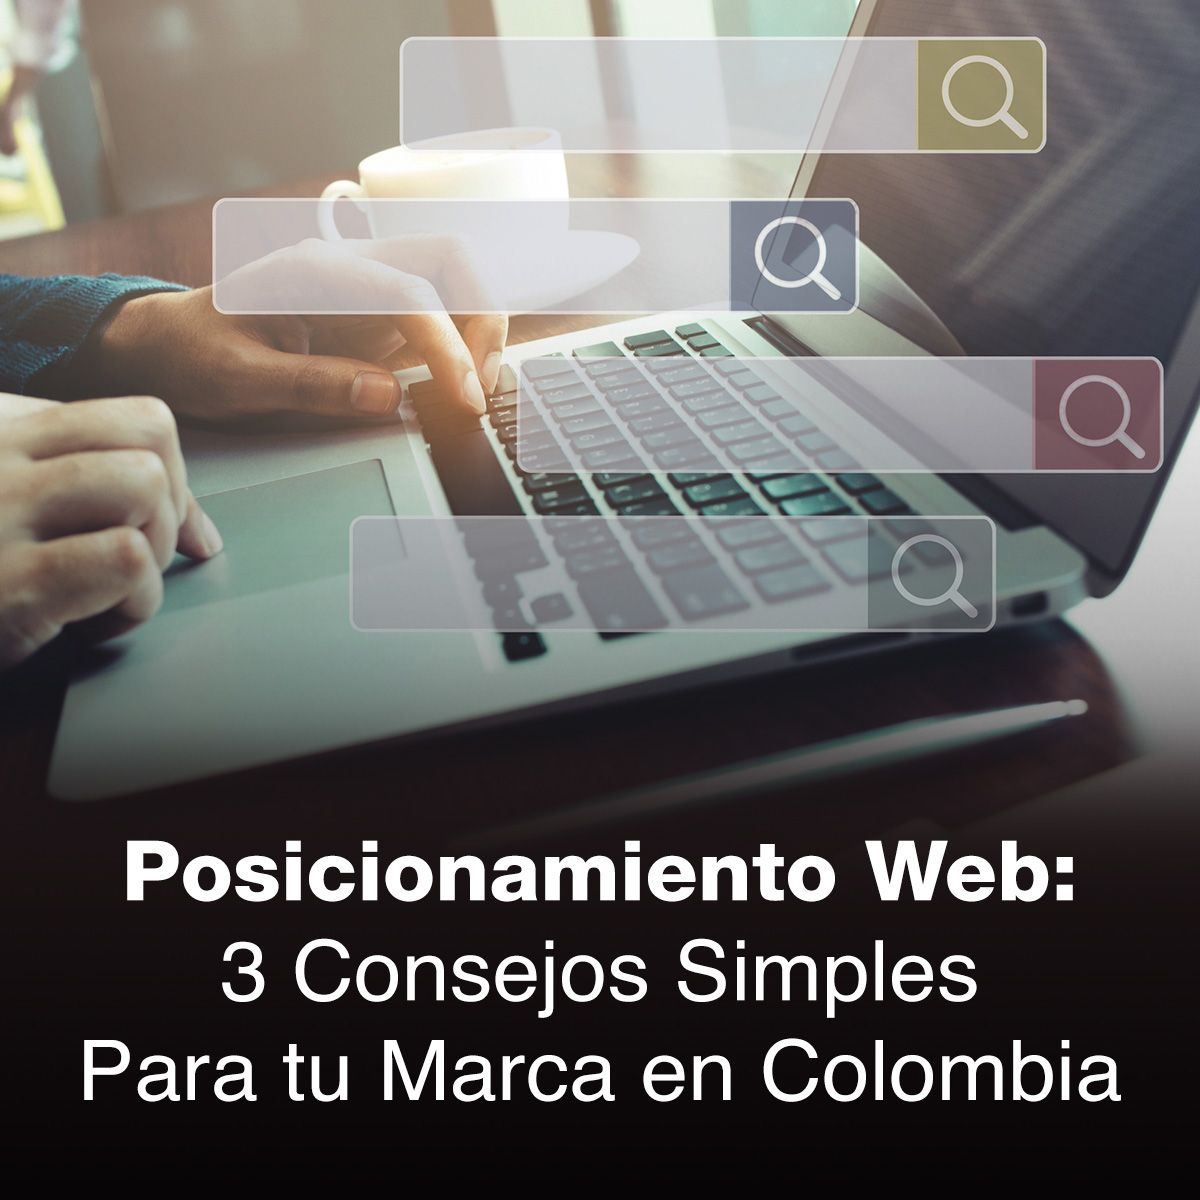 Posicionamiento Web: 3 Consejos Simples Para tu Marca en Colombia